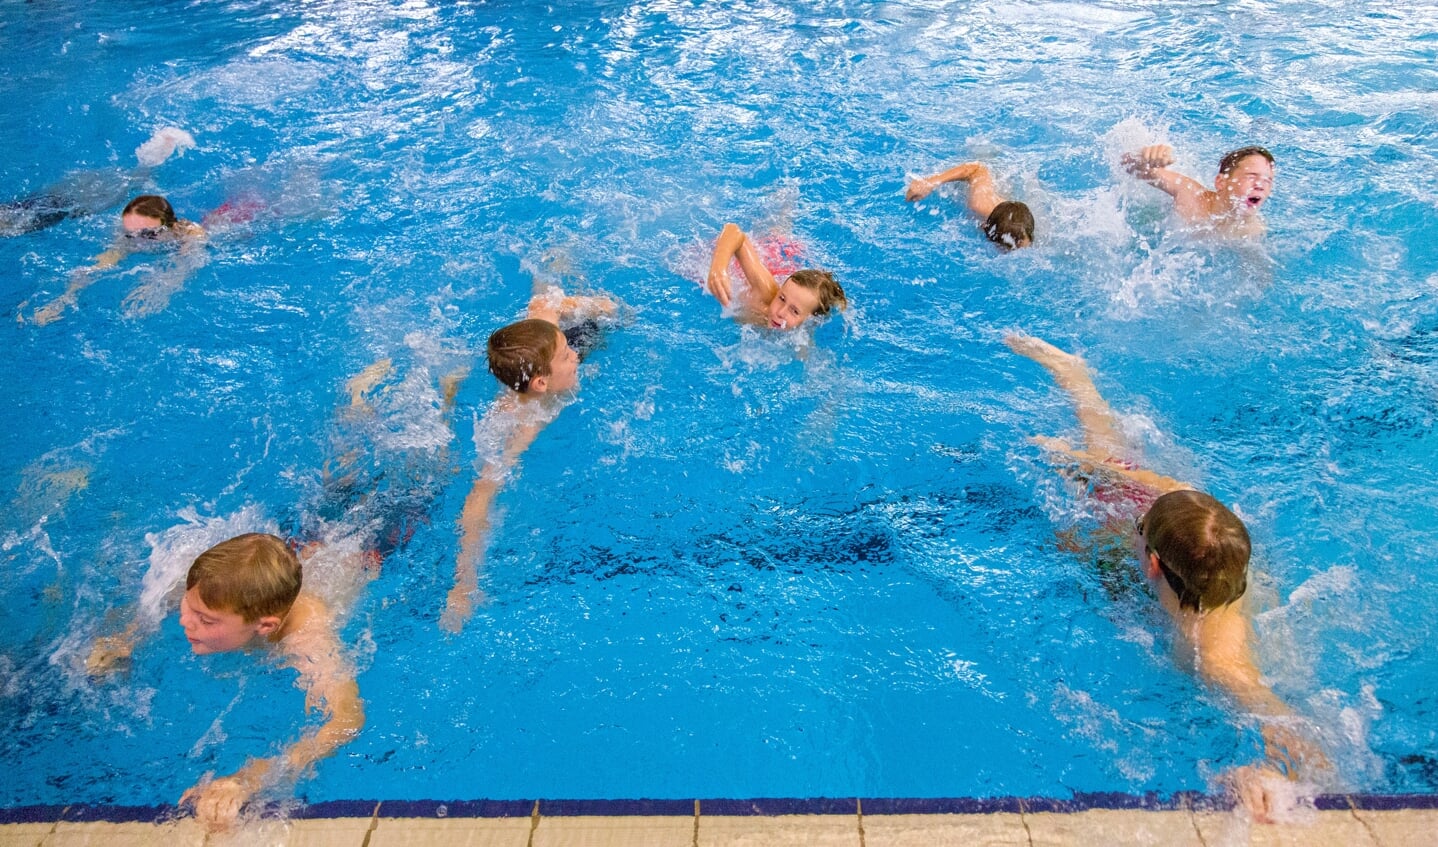 Alle mennesker burde kunne svømme, men det er langt fra tilfældet. Idrætsklubben TSB Flensburg tilbyder nu fem ledige pladser i et svømmekurses, der starter kommende mandag. Arkivfoto: